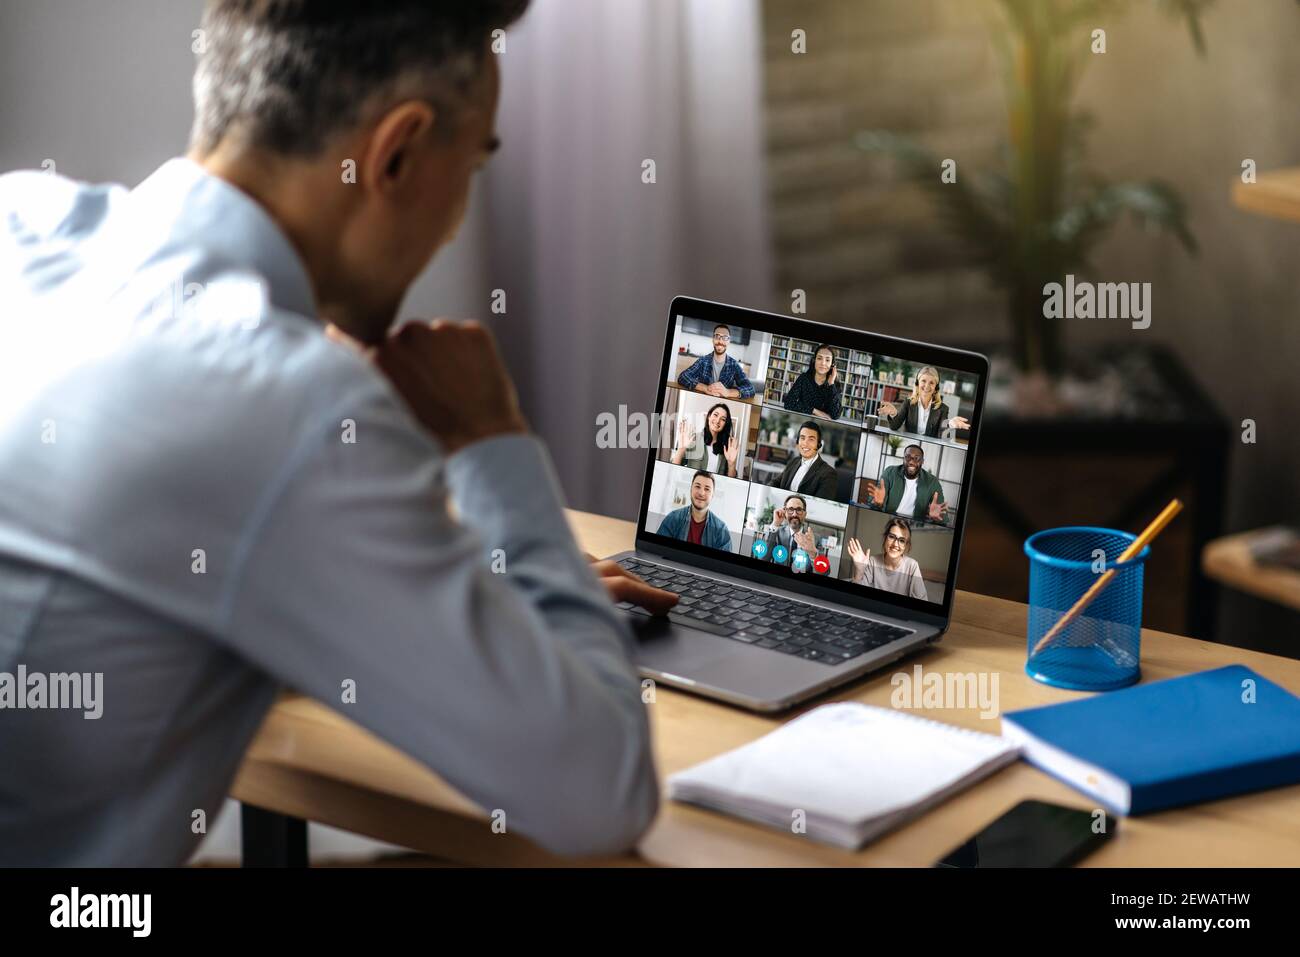 Comunicazione video online. Un uomo d'affari adulto di successo usa un laptop per videoconferenza con i soci d'affari. Un manager o un ceo è seduto alla sua scrivania e sta parlando in videochiamata con i colleghi Foto Stock